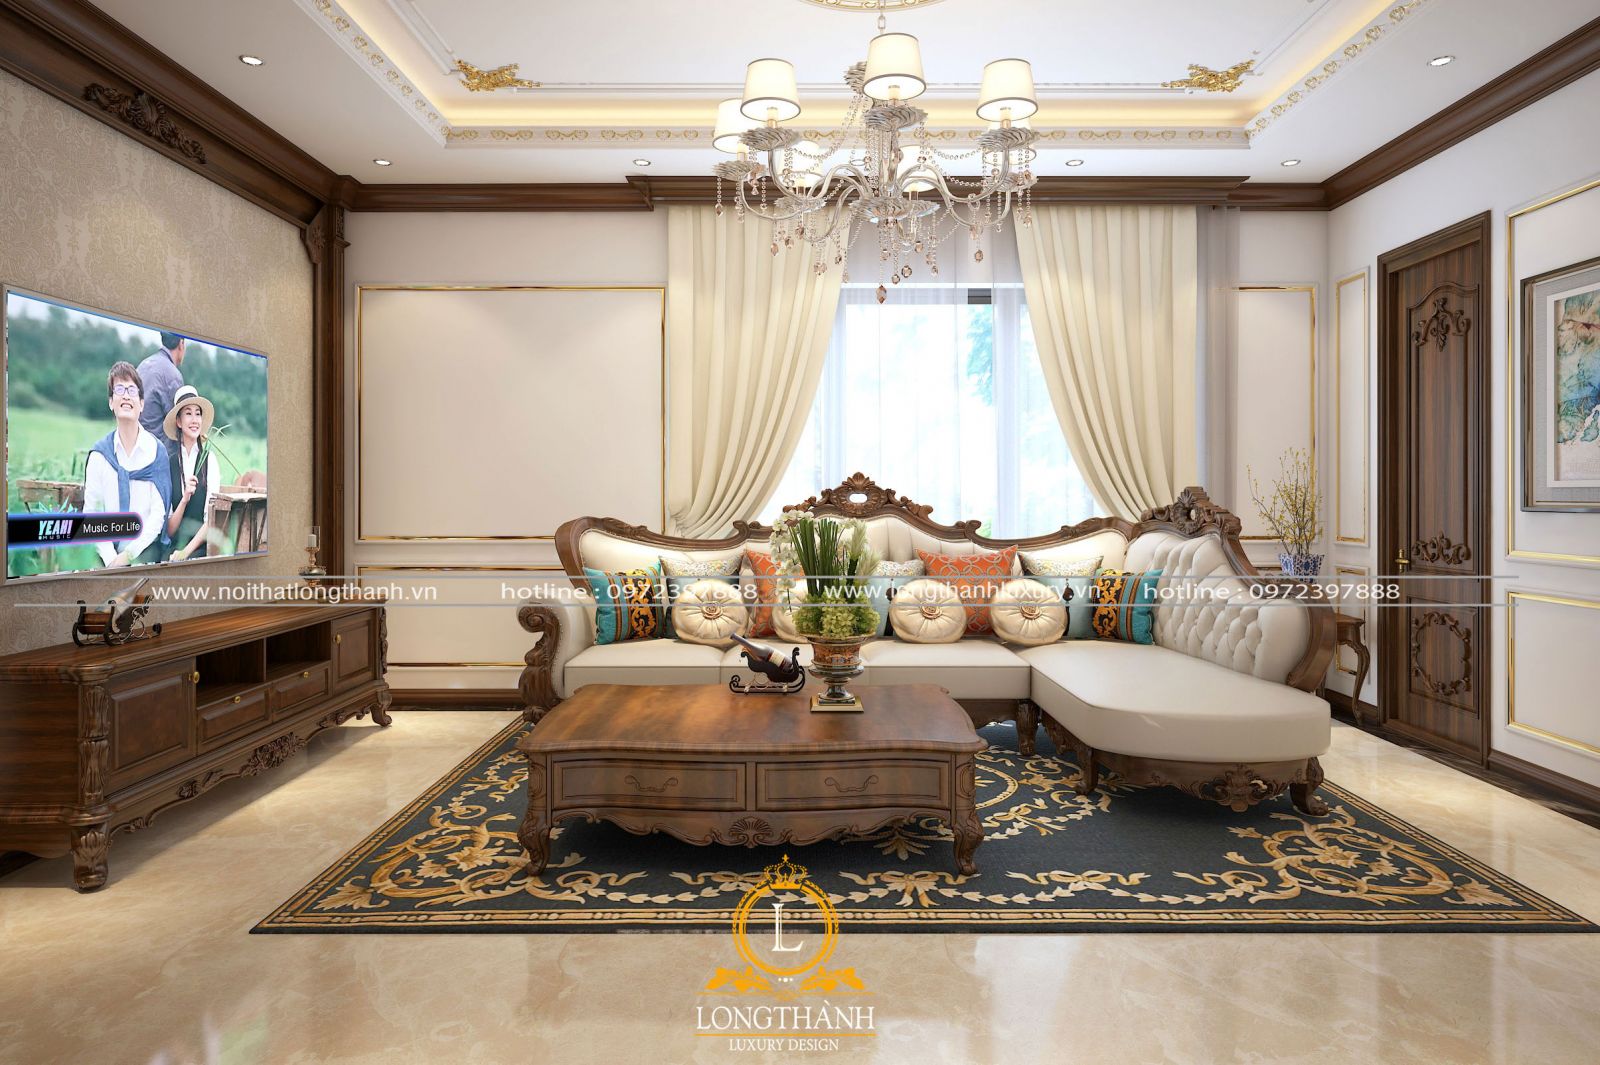 Không gian phòng khách được thiết kế theo phong cách tân cổ điển đẹp nhẹ nhàng sang trọng